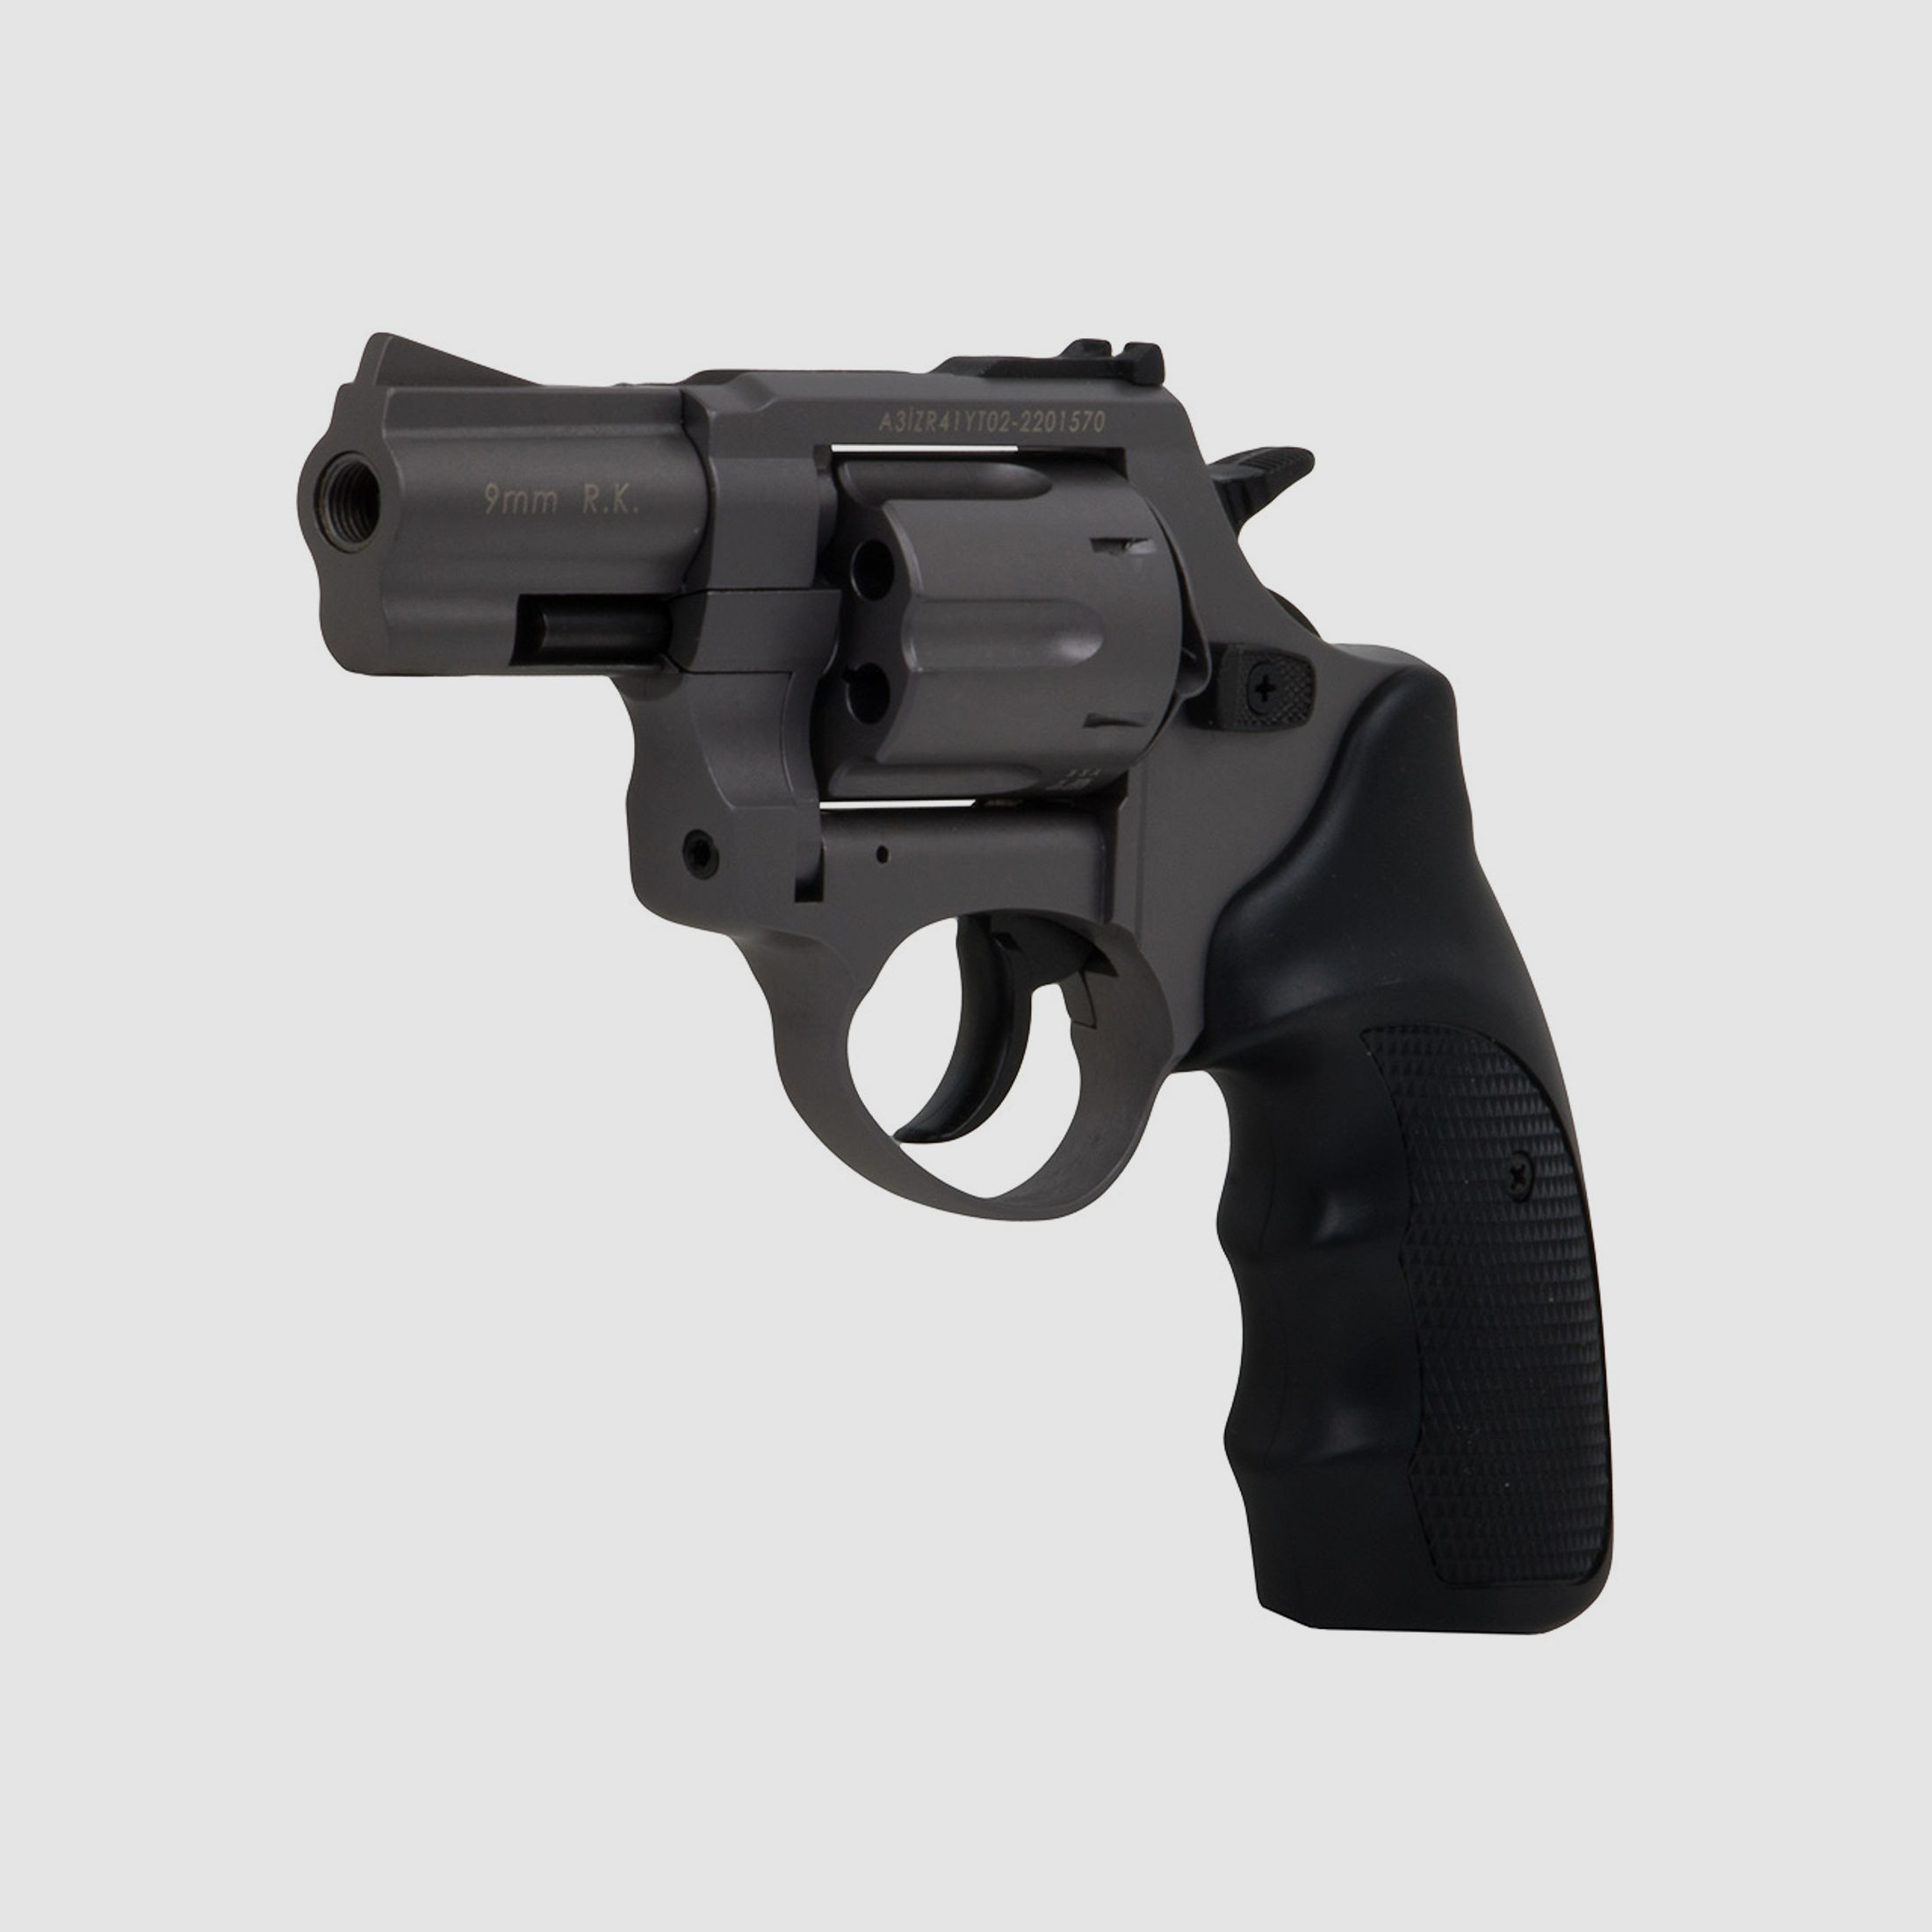 Schreckschuss Revolver Zoraki R1 Titan 2,5 Zoll PTB 1022 Kaliber 9 mm R.K. (P18) + 50 Schuss